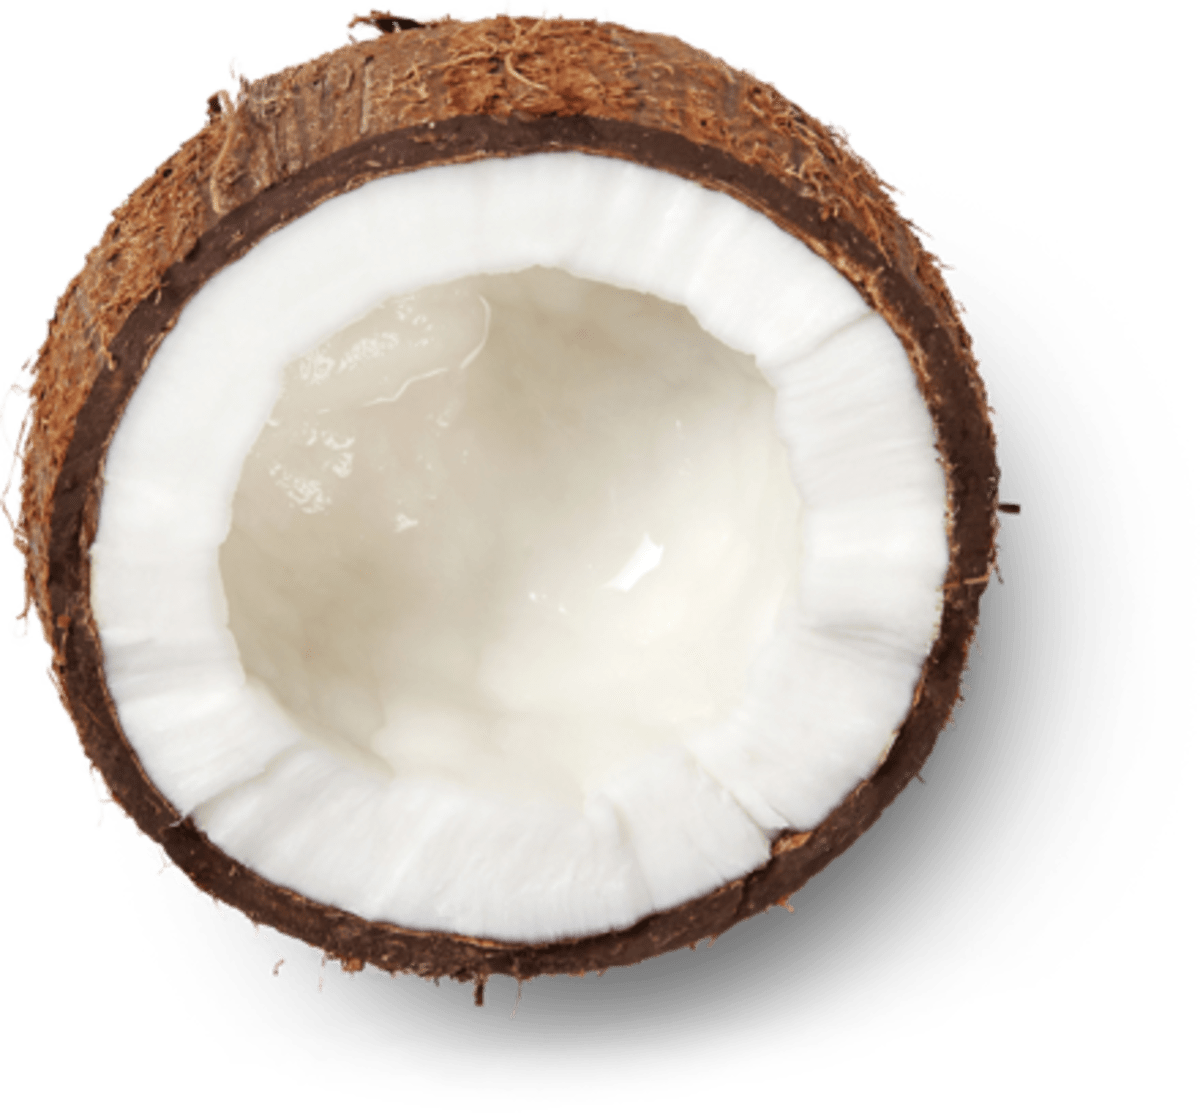 coconut-open